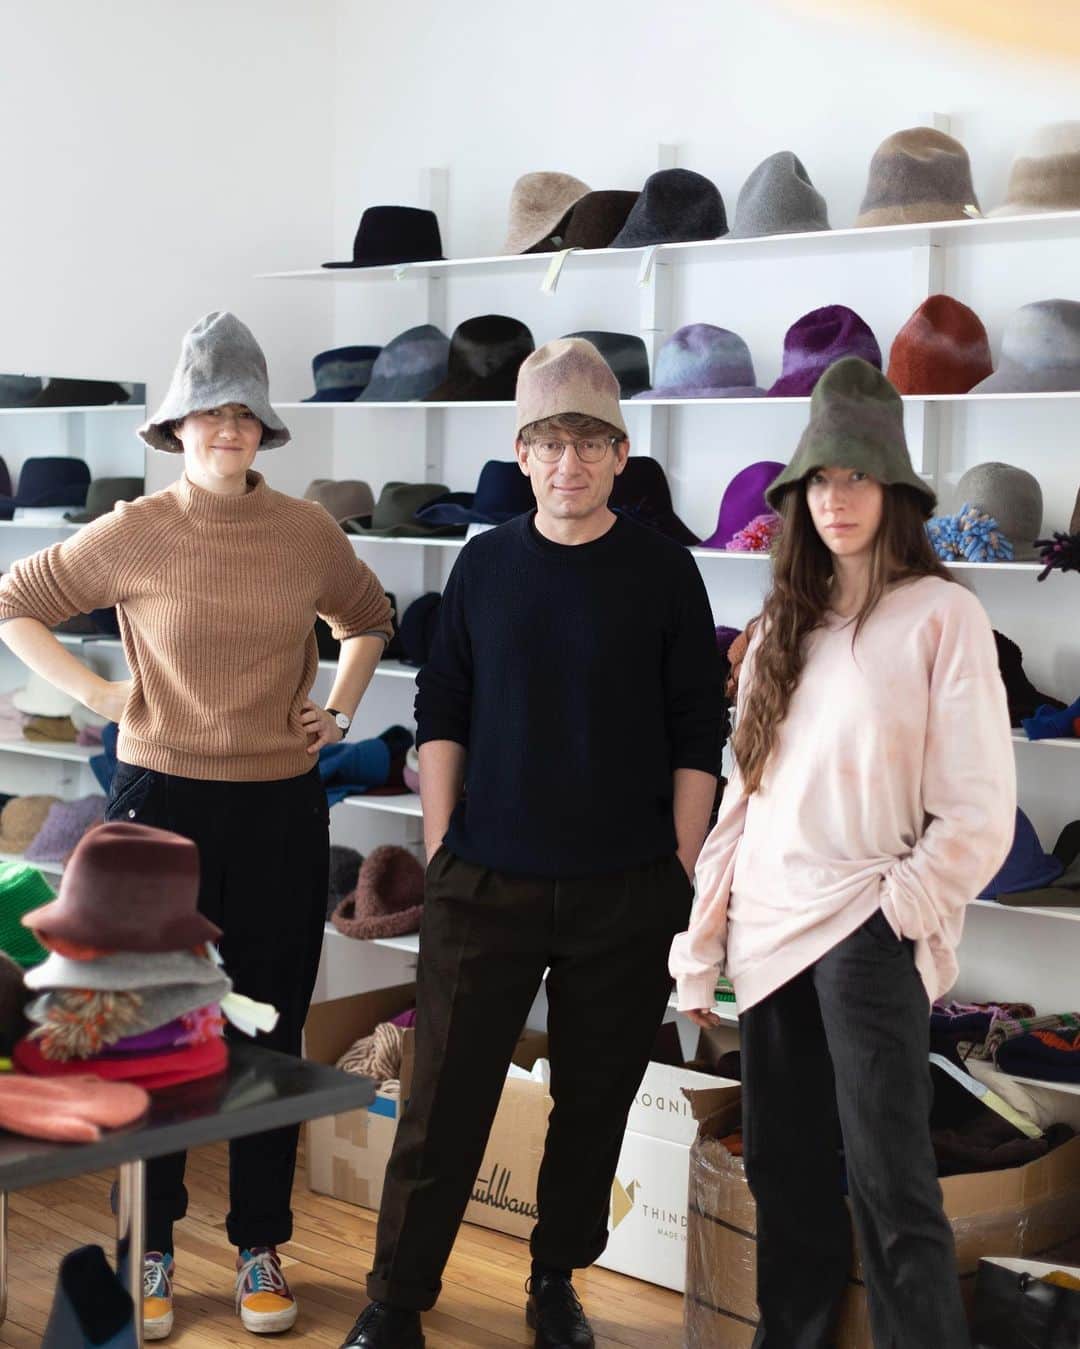 HPFRANCE　アッシュペーフランスのインスタグラム：「オーストリア・ウィーン発帽子ブランド、ミュールバウアー @muehlbauer_hats のデザイナーであるクラウス・ミュールバウアーが、10月27日(金) に4年ぶりの来日イベントを開催✨「日常的に身に付けられる帽子」をコンセプトに、時代を捉えた創造性でコレクションを完成させるミュールバウアー。今年で設立120周年を迎える老舗メーカーでありながら、4代目のクラウス氏による現代的なエッセンスを取り入れたハットは世界中で愛されています。 イベントでは、秋冬新作コレクションが豊富に揃うほか、クラウス氏が120周年を記念して手掛けた1点物のアーカイブコレクションも登場。当日お買い上げのお客様に、先着順にて120周年記念ギフトをプレゼントします！ デザイナー本人からハット選びのアドバイスを聞けるまたとない機会、ぜひご来店ください。  【デザイナー来日イベント概要】 ■日時: 2023年10月27日(金) 17:30-19:00 ■場所: goldie H.P.FRANCE 新宿店（小田急百貨店 新宿店 1F） ■電話: 03-5339-7661 👉イベント詳細は @goldie_h.p.france をCHECK!」